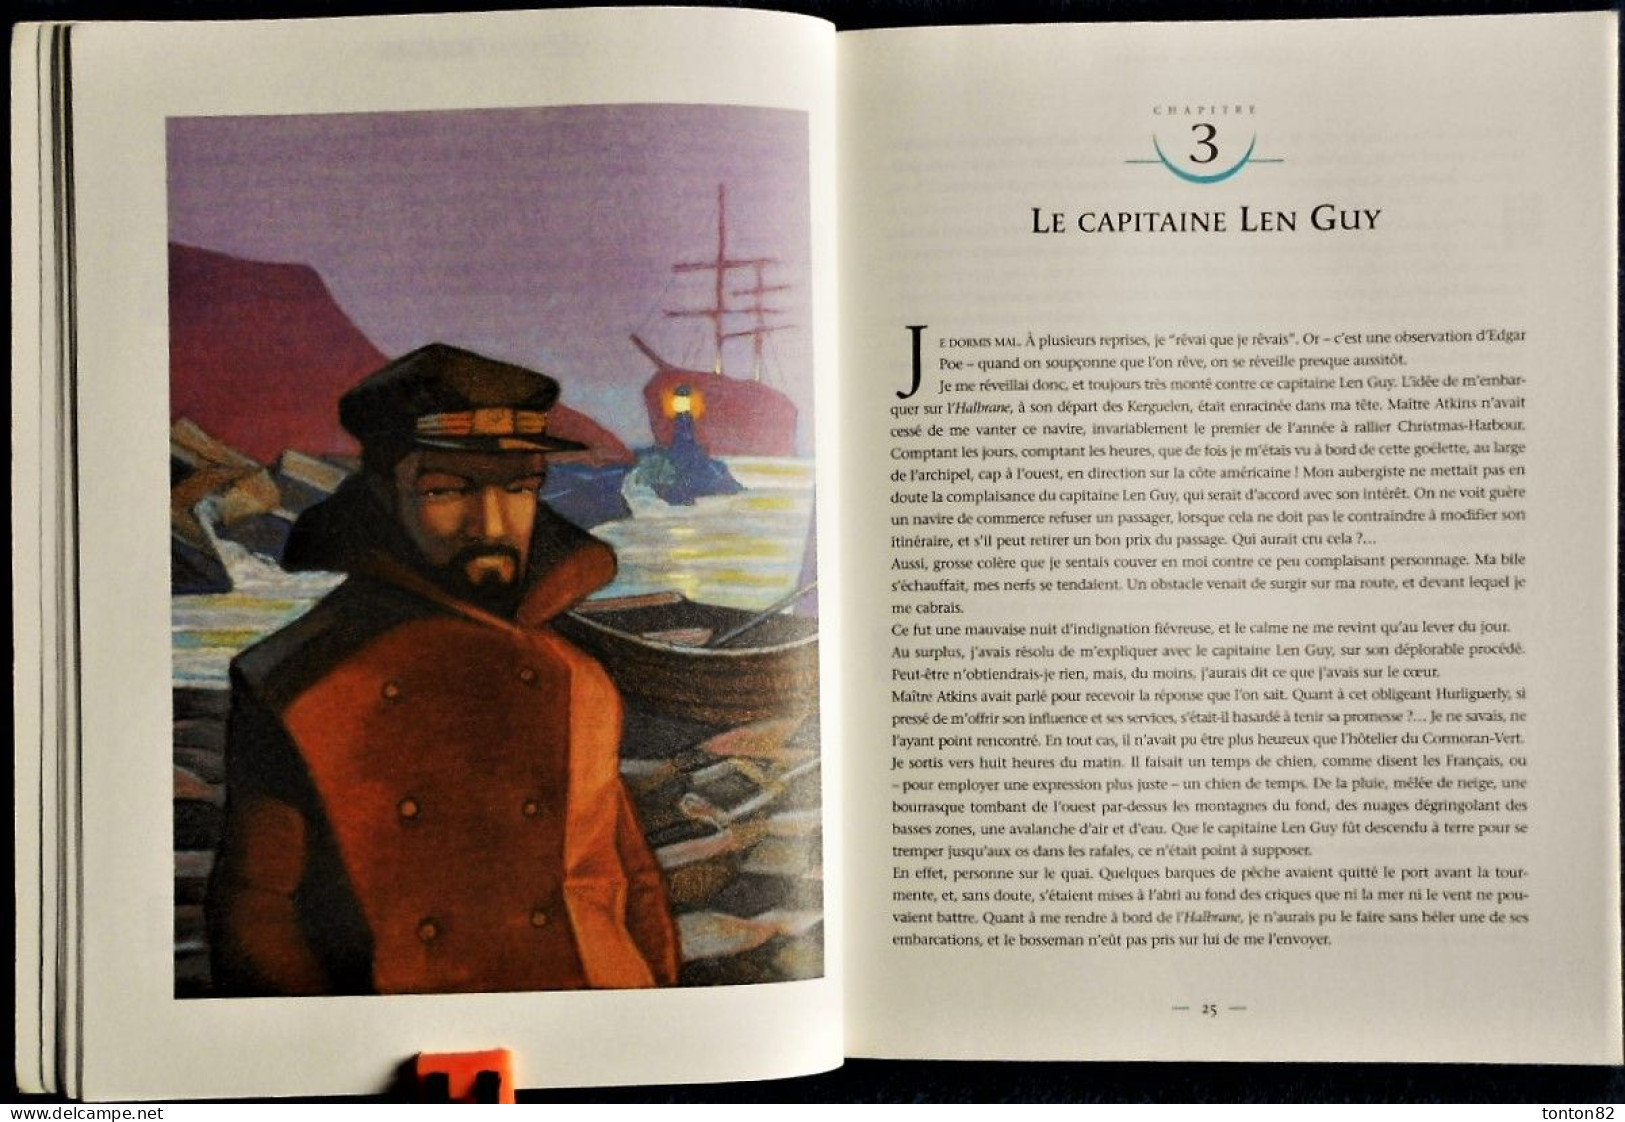 Jules Verne - Le SPHINX des glaces - Actes SUD Junior - ( 2004 ) - Belle édition .